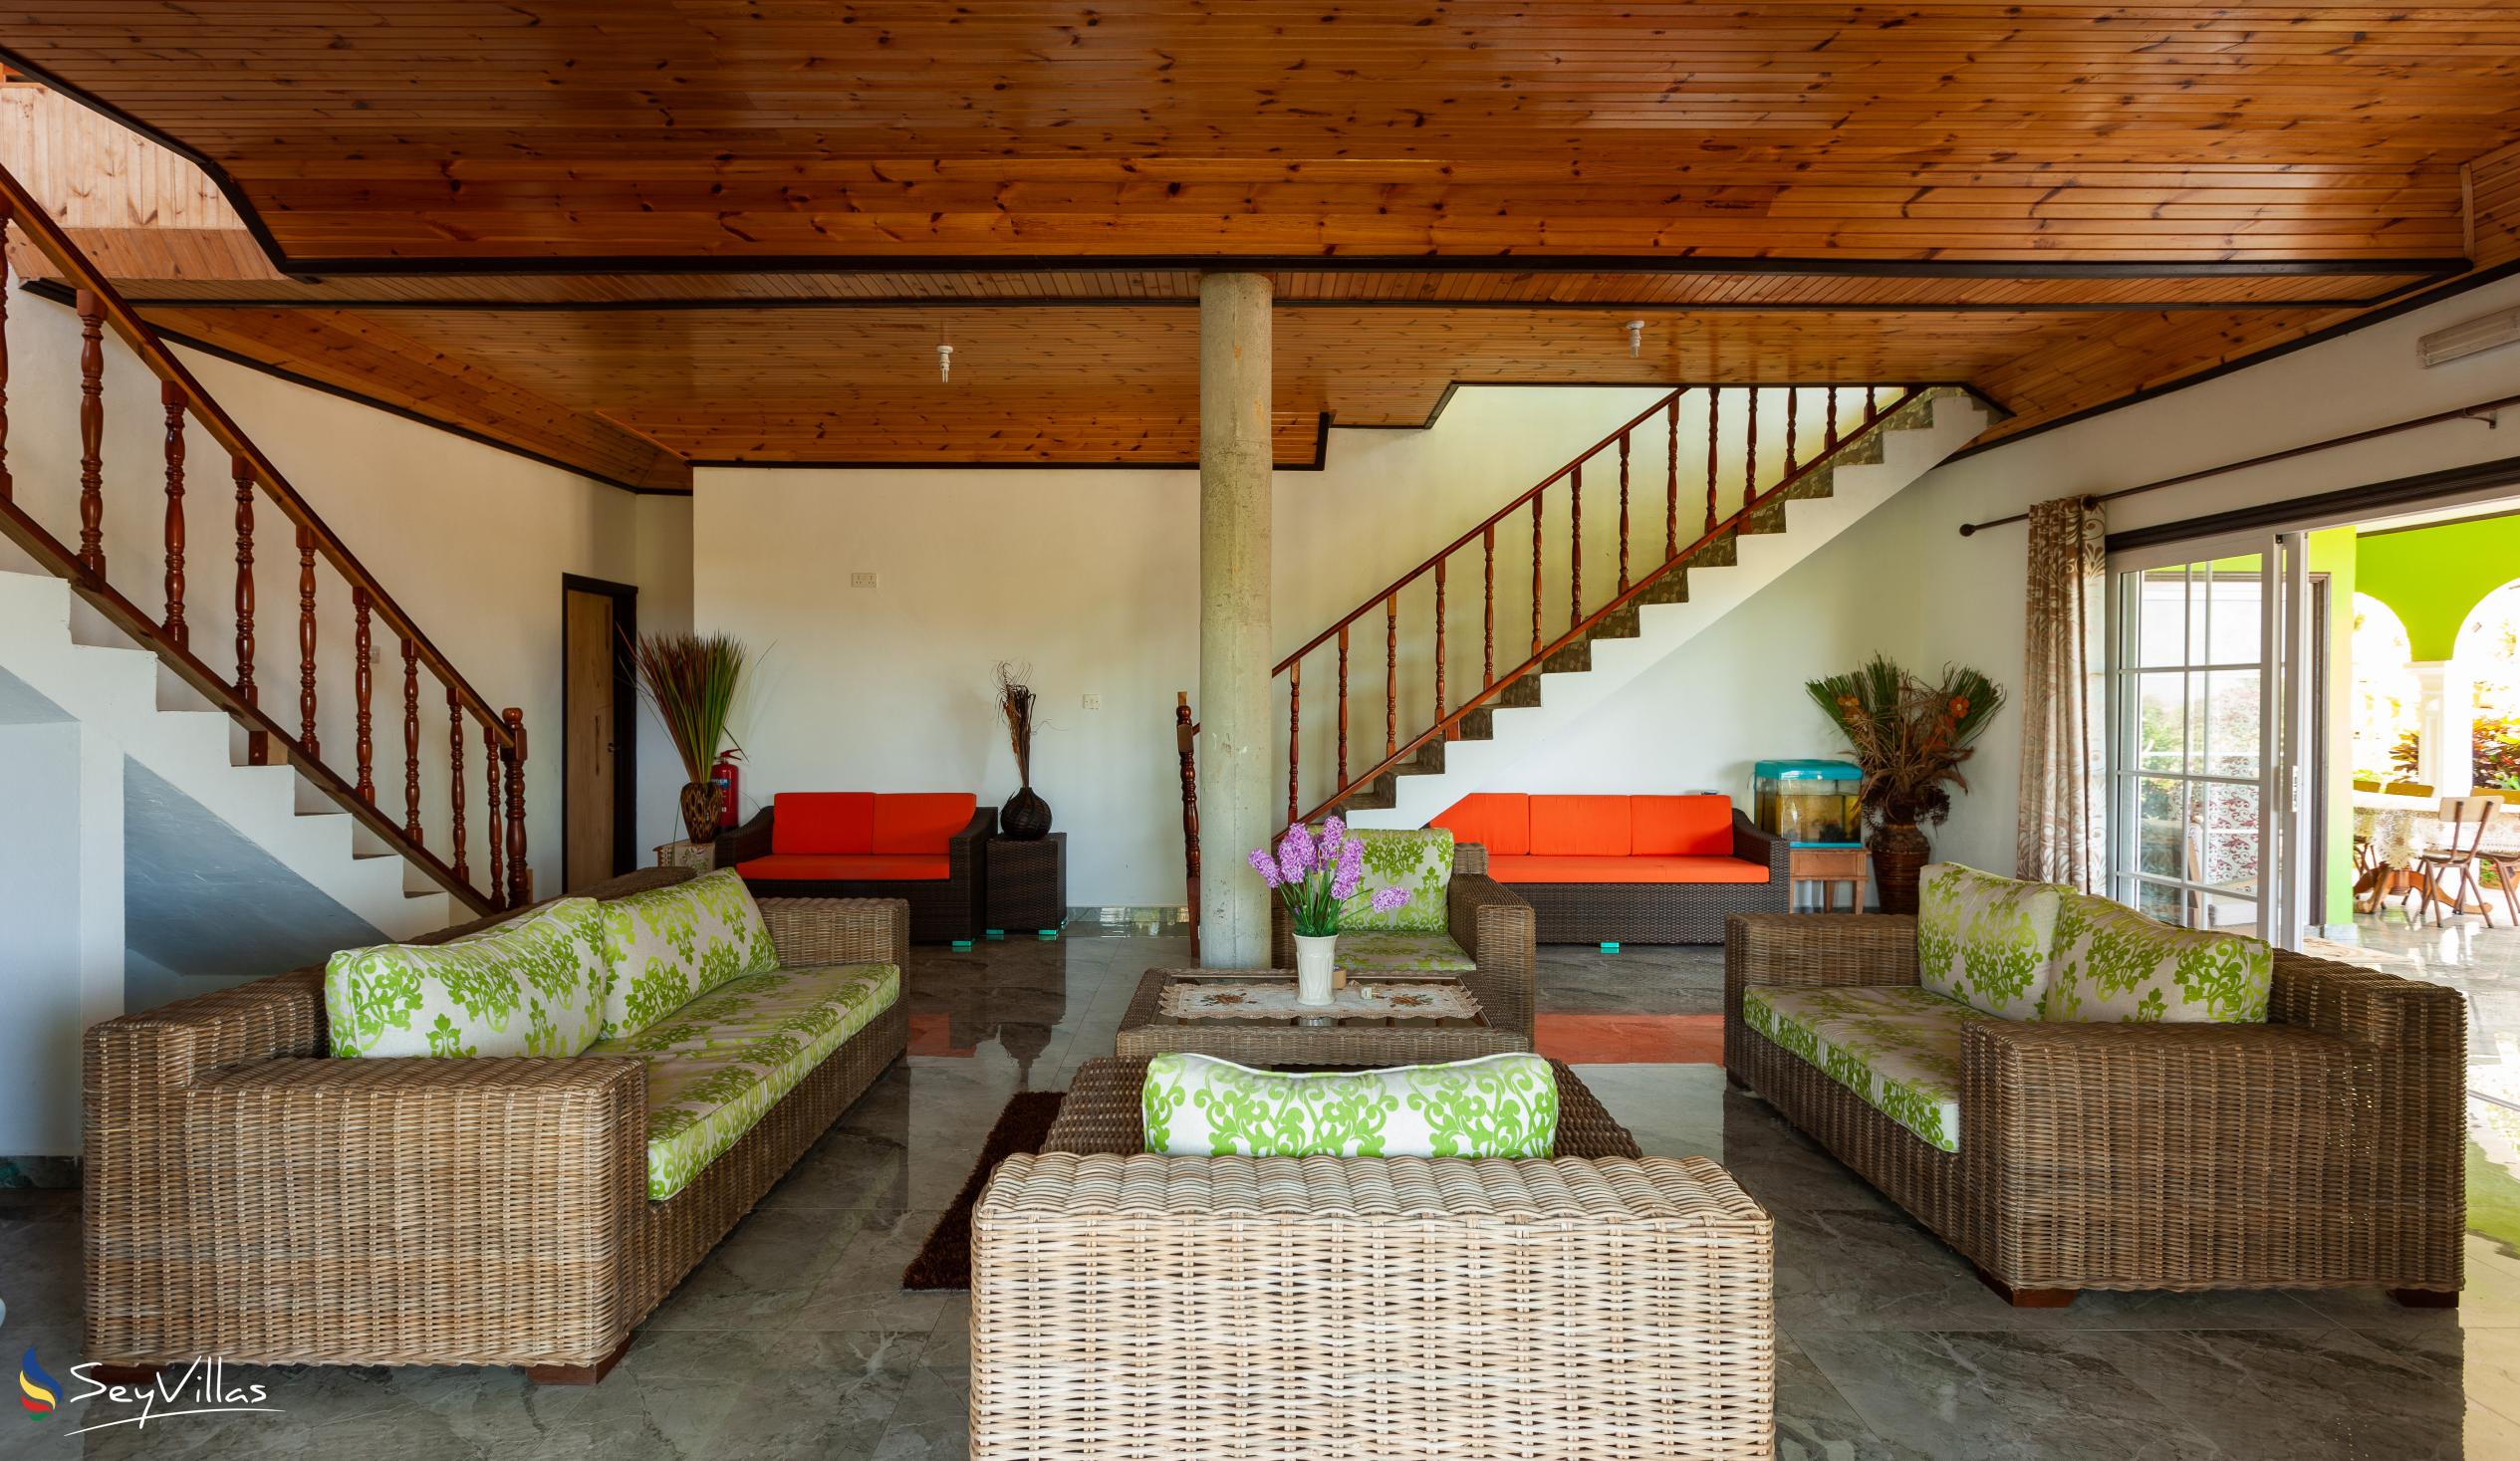 Photo 26: Villa Hortensia - Indoor area - La Digue (Seychelles)